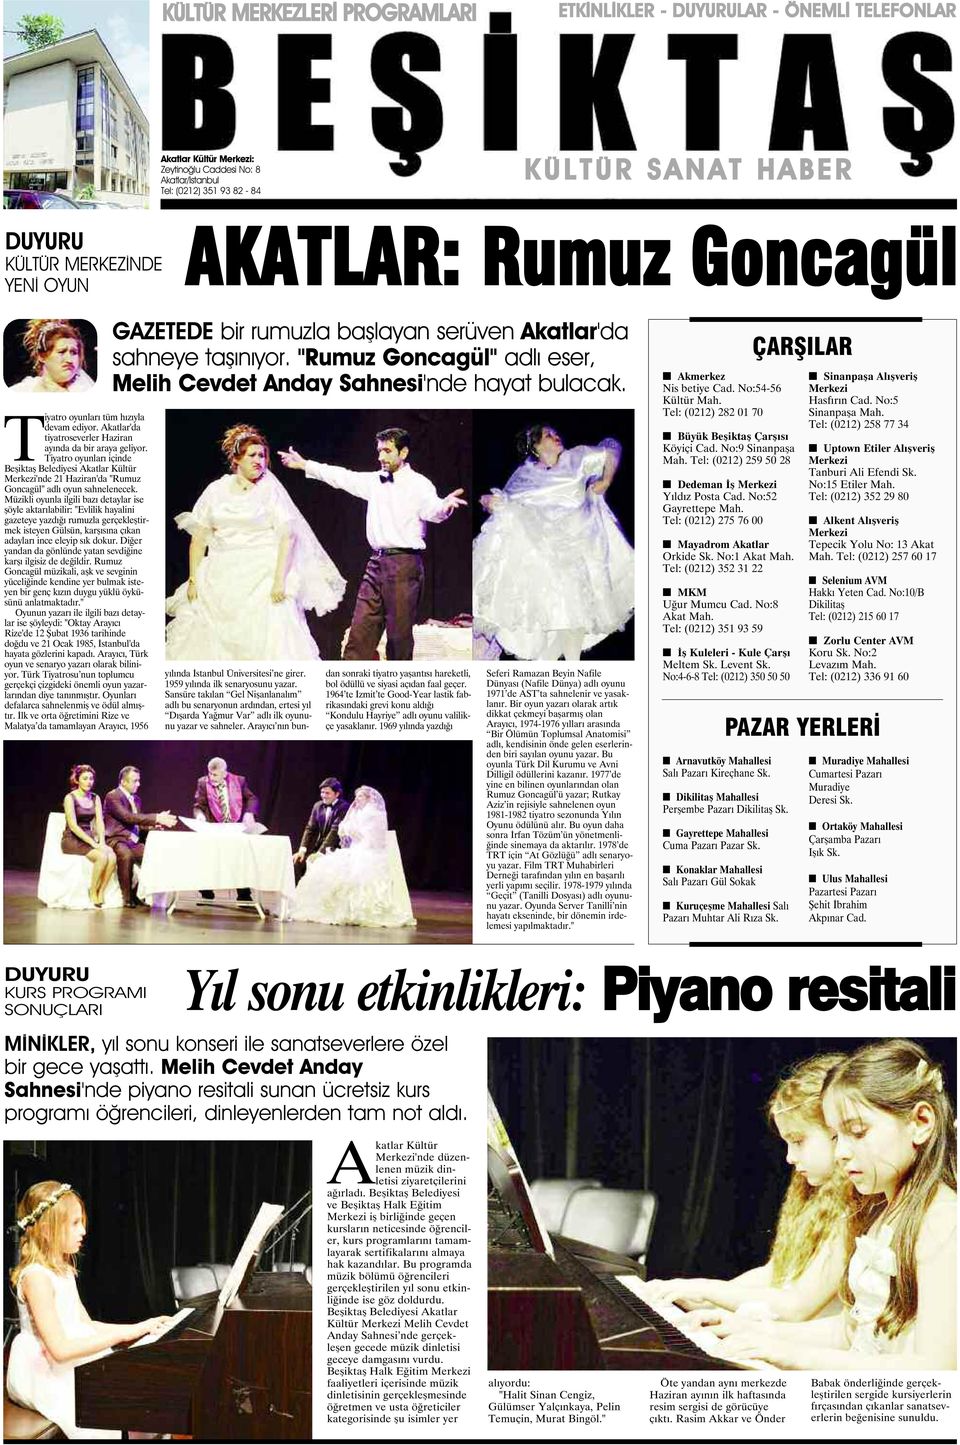 Tiyatro oyunları içinde Beşiktaş Belediyesi Akatlar Kültür Merkezi'nde 21 Haziran'da "Rumuz Goncagül" adlı oyun sahnelenecek.